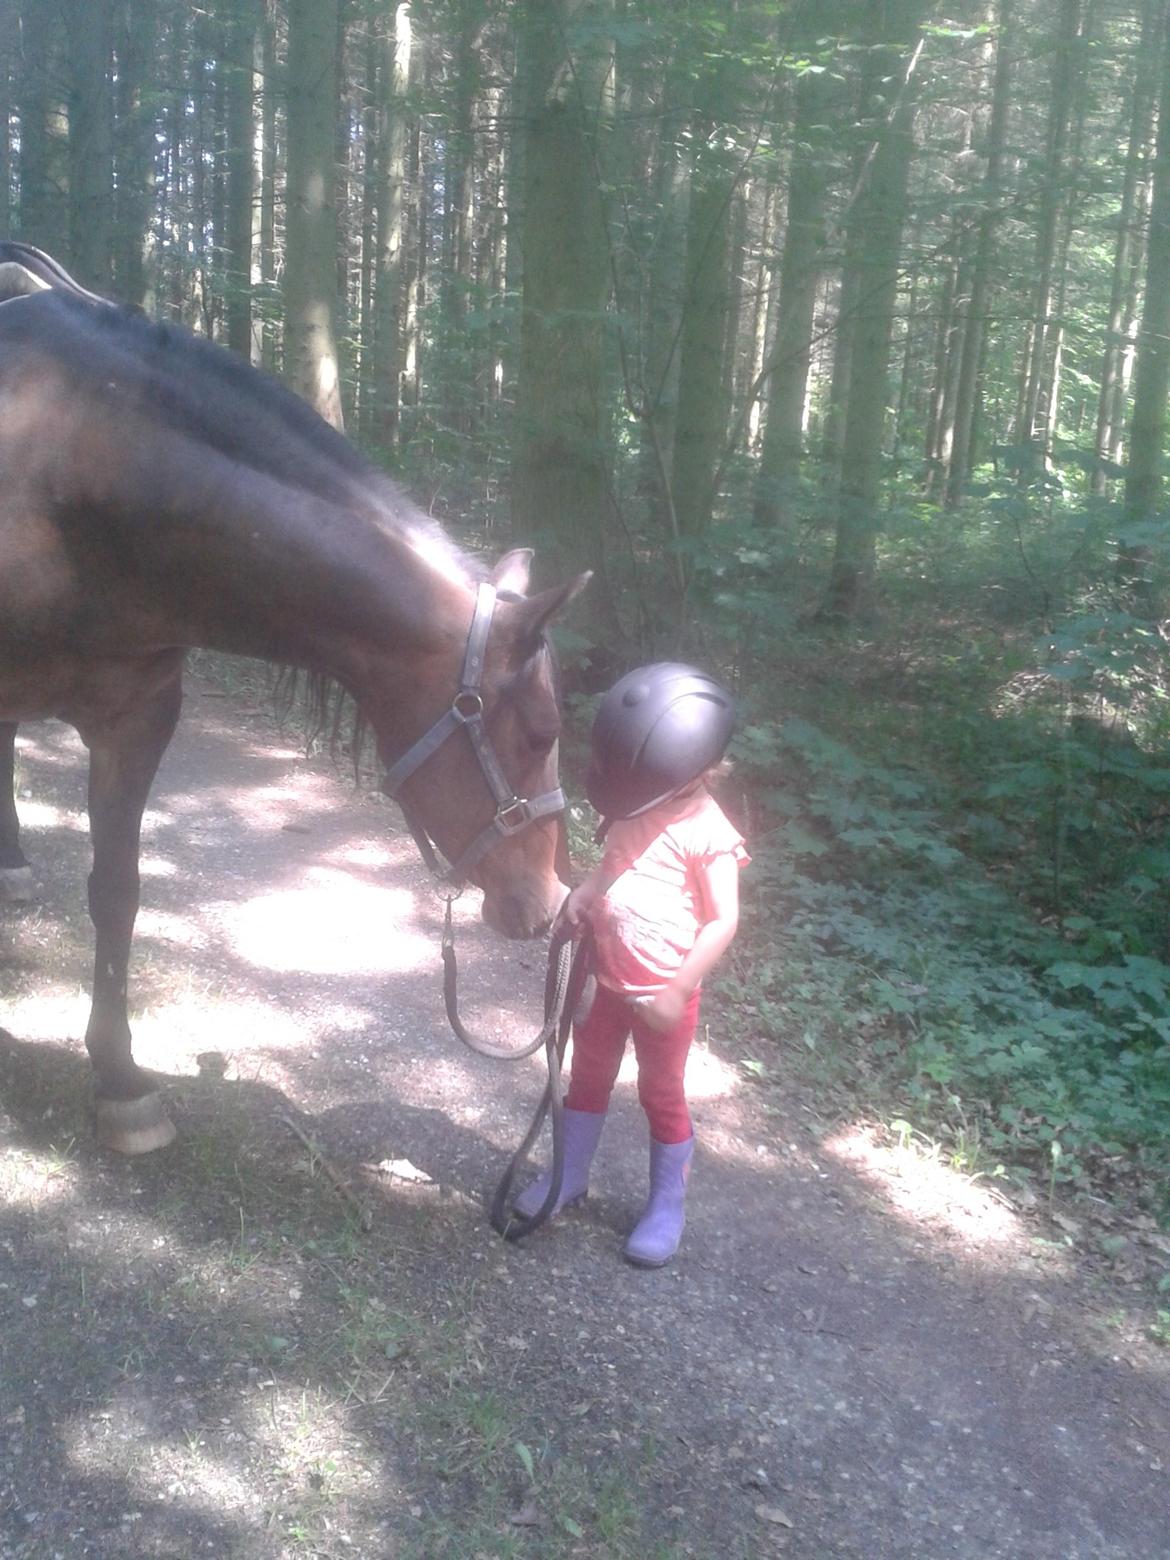 Anglo Araber (AA) Nekita *himmelhest* - "Faster Karoline jeg kan altså godt selv!"
ja min niece ved hvordan man håndtere en hest selv i en alder af 3 år billede 12